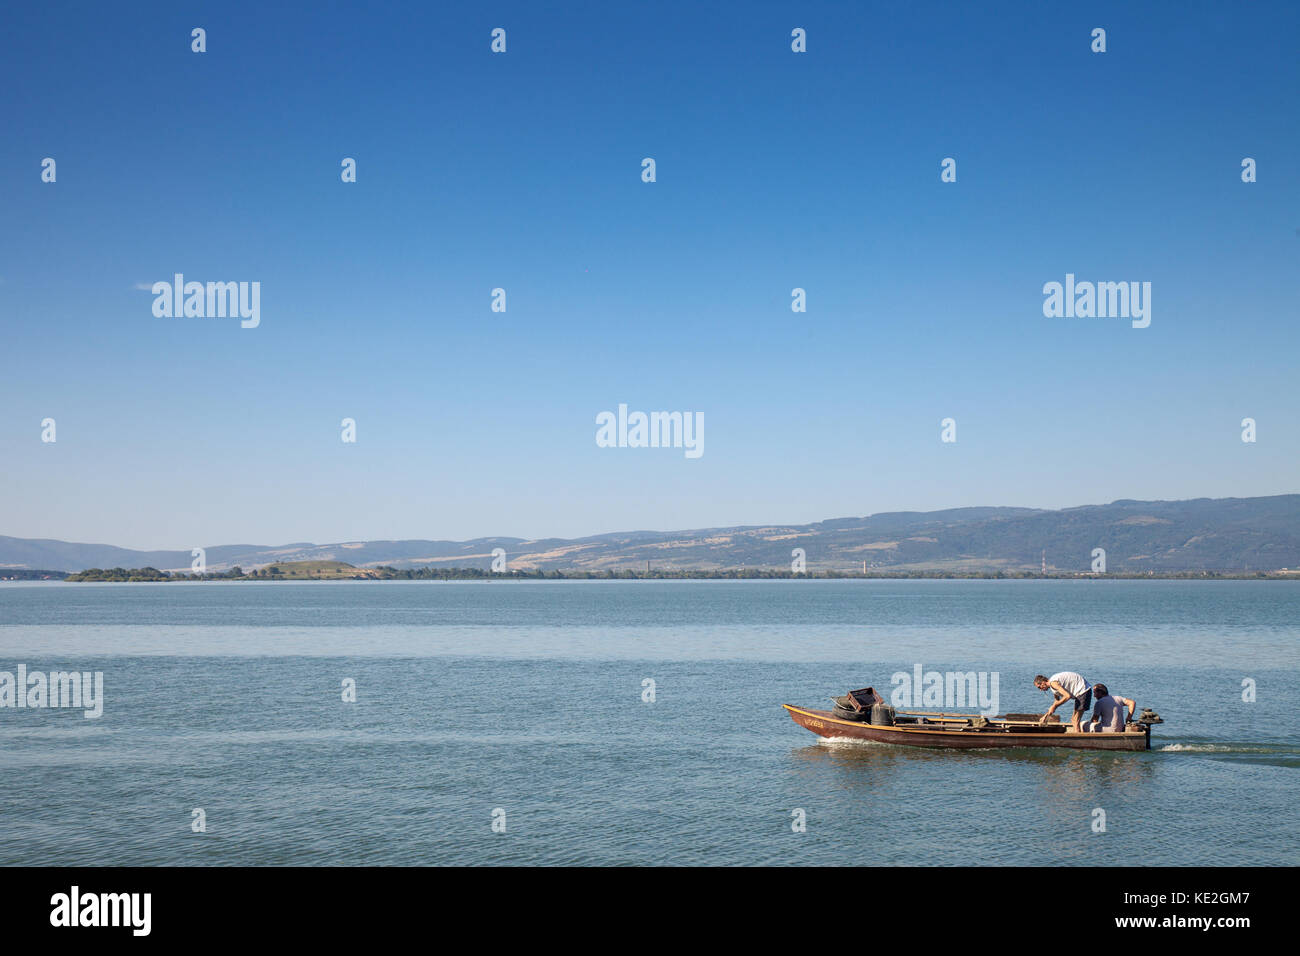 Beograd, Serbie - septembre 16, 2017 : sur un bateau de pêche Les pêcheurs près de Gornji Milanovac au cours de l'après-midi, sur le Danube, photo de t Banque D'Images